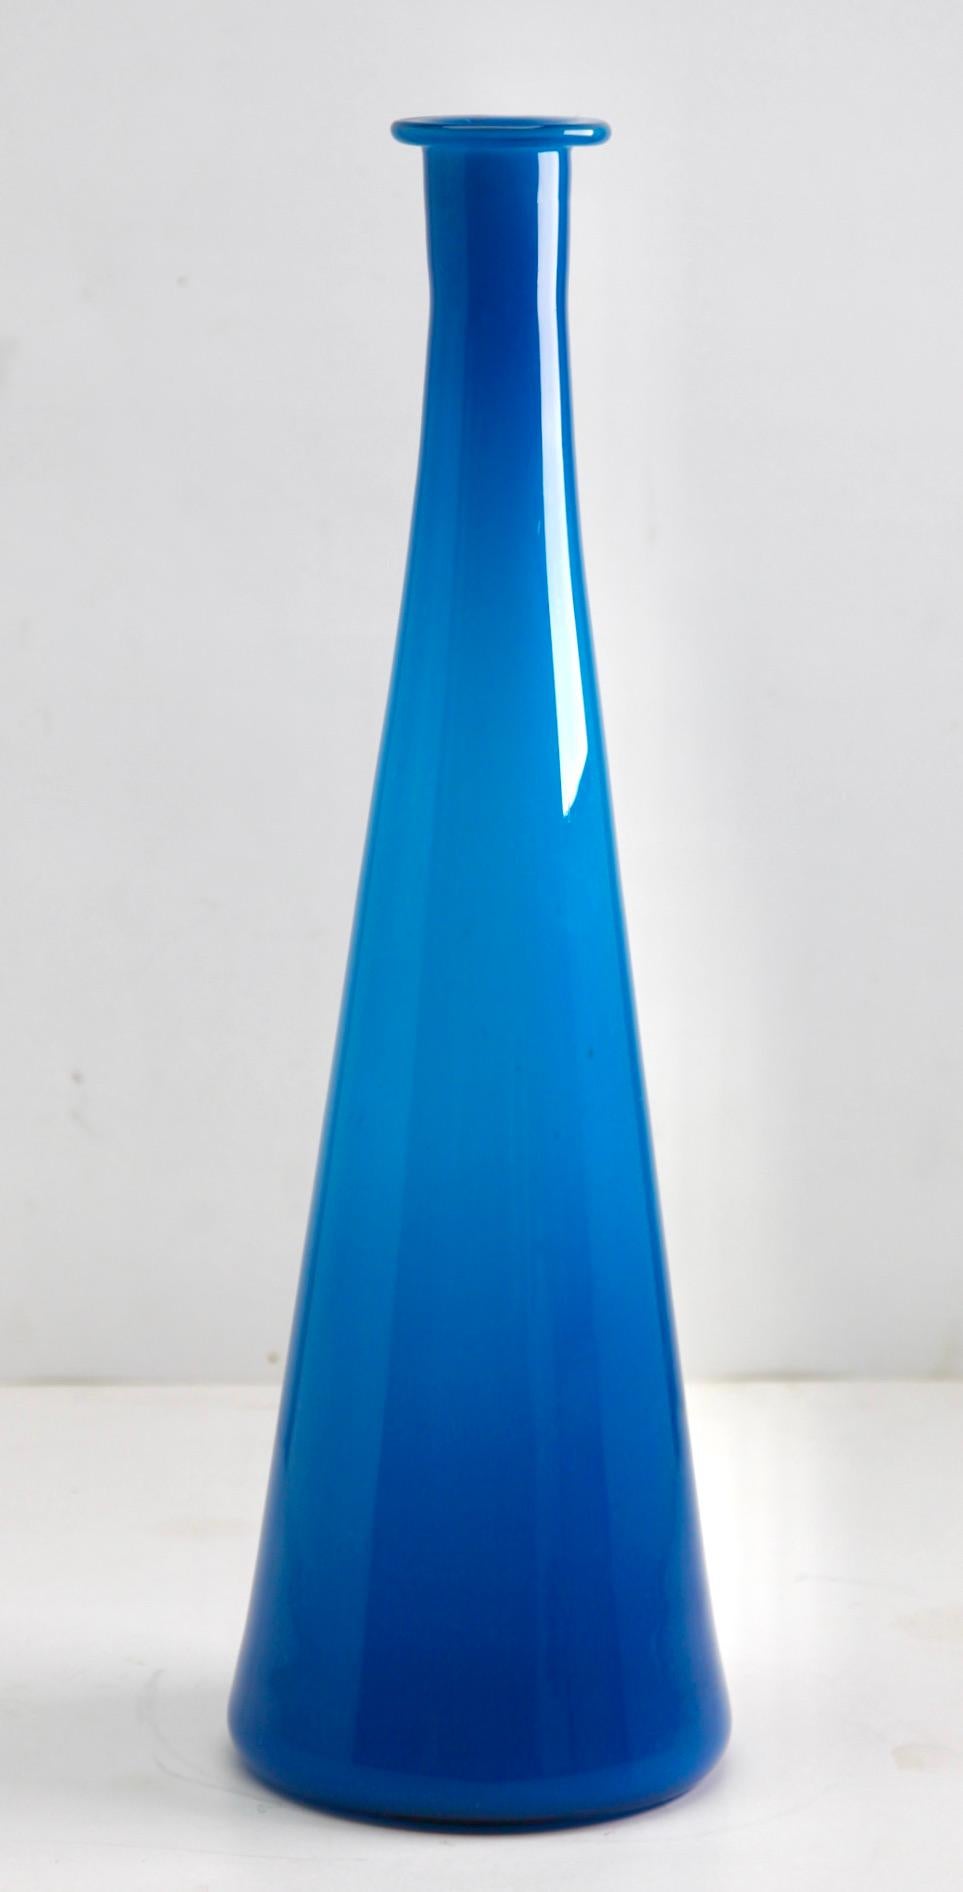 Empoli 'Florenz, Italien' große Vase aus Opalin, 1960er Jahre

Typische Dekore aus den Glasfabriken von Florenz, Italien, die zusammen als Empoli bekannt sind.
Alle diese Vasen haben eine innere, undurchsichtige Schicht.

Mit freundlichen